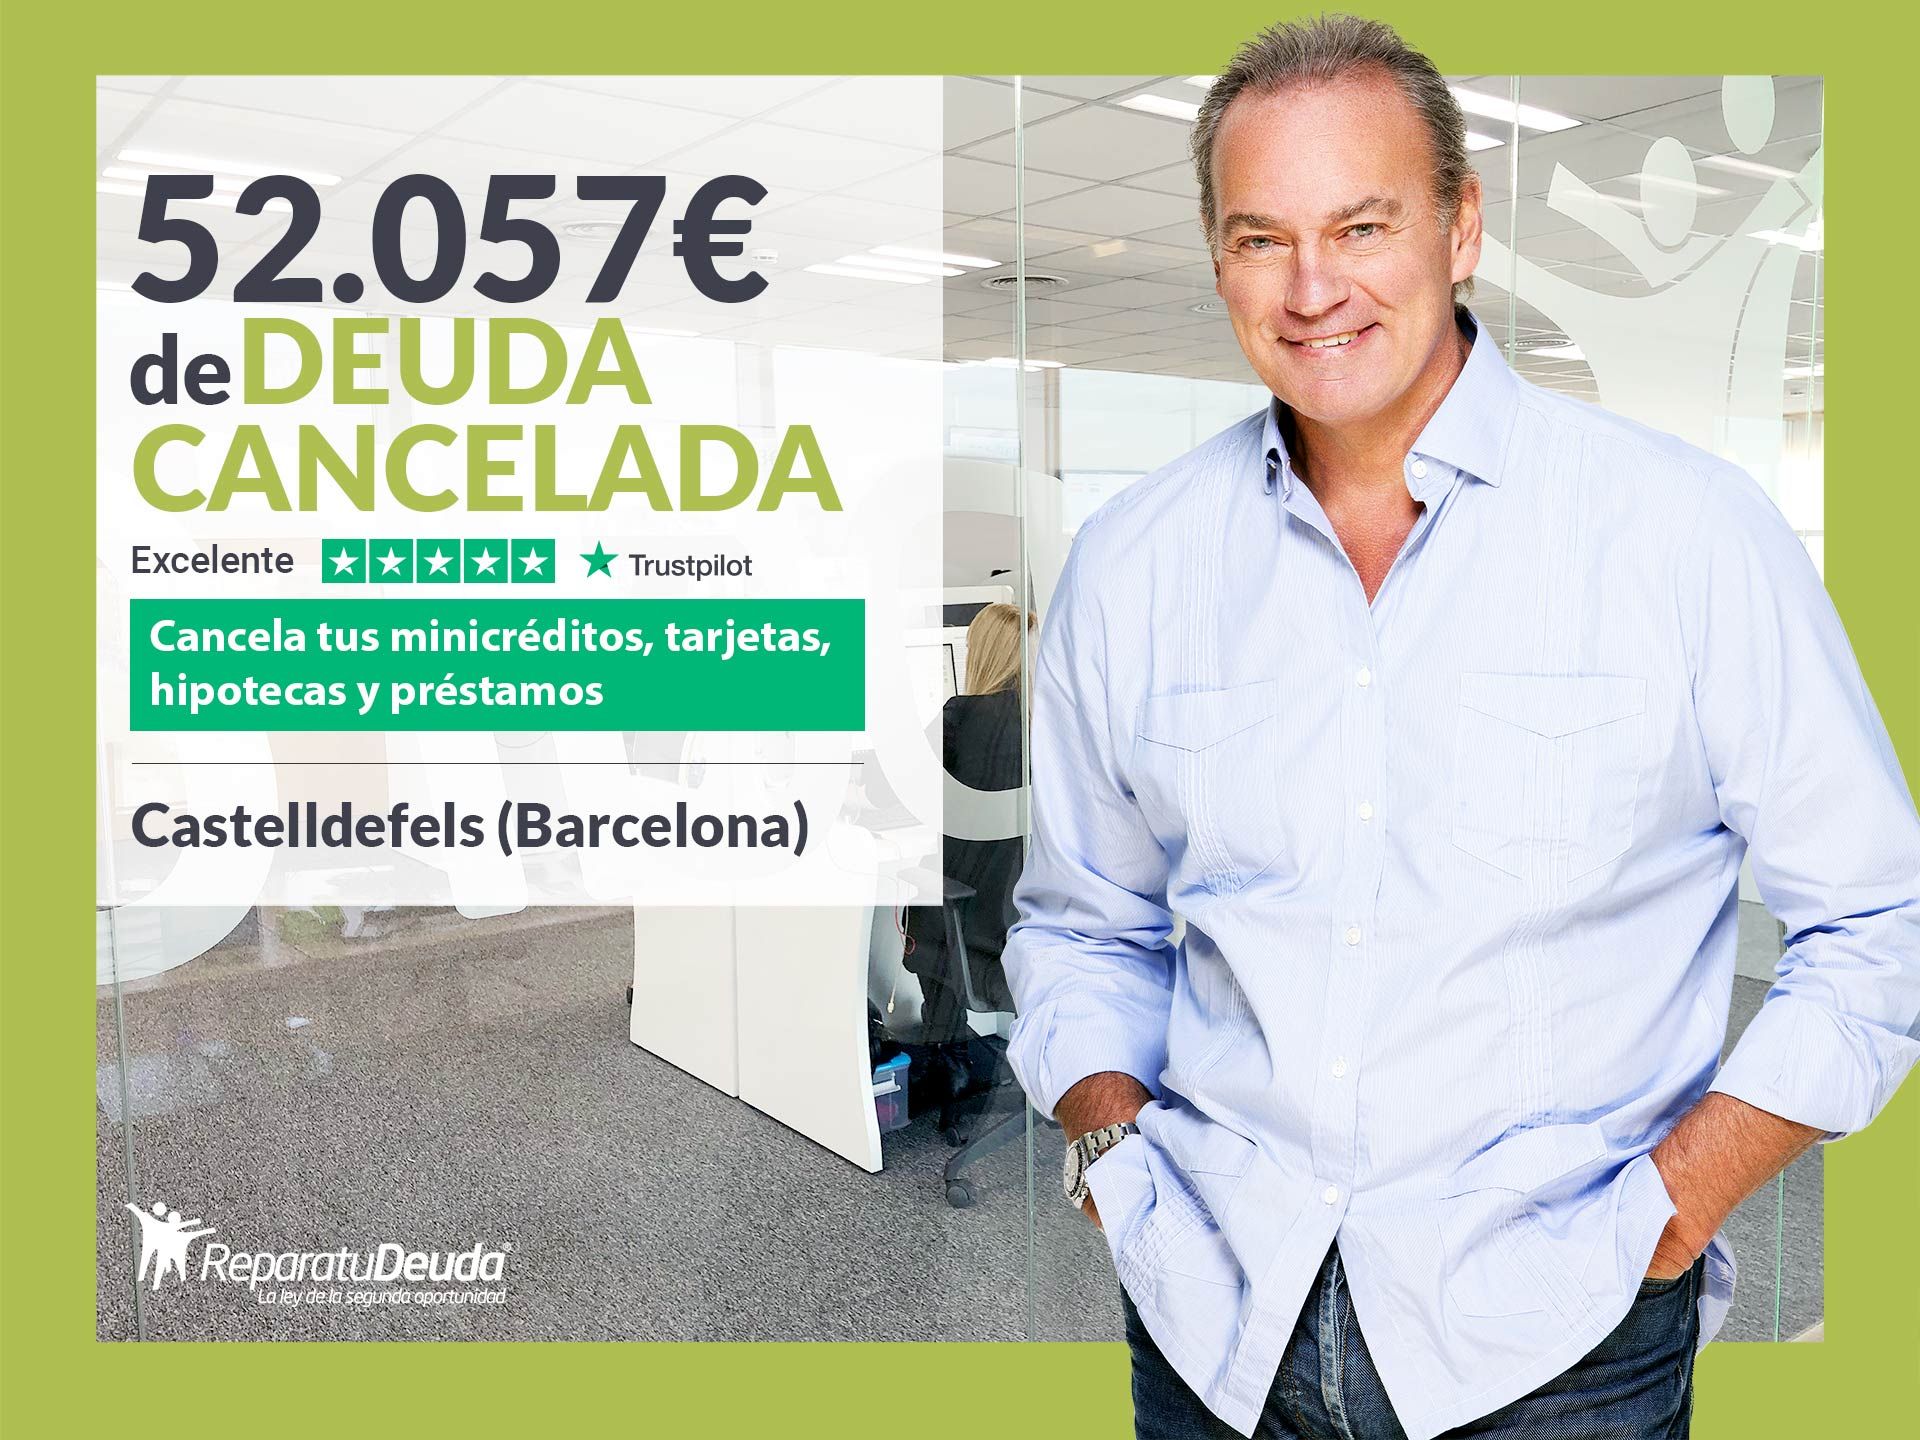 Repara tu Deuda Abogados cancela 52.057? en Castelldefels (Barcelona) con la Ley de Segunda Oportunidad